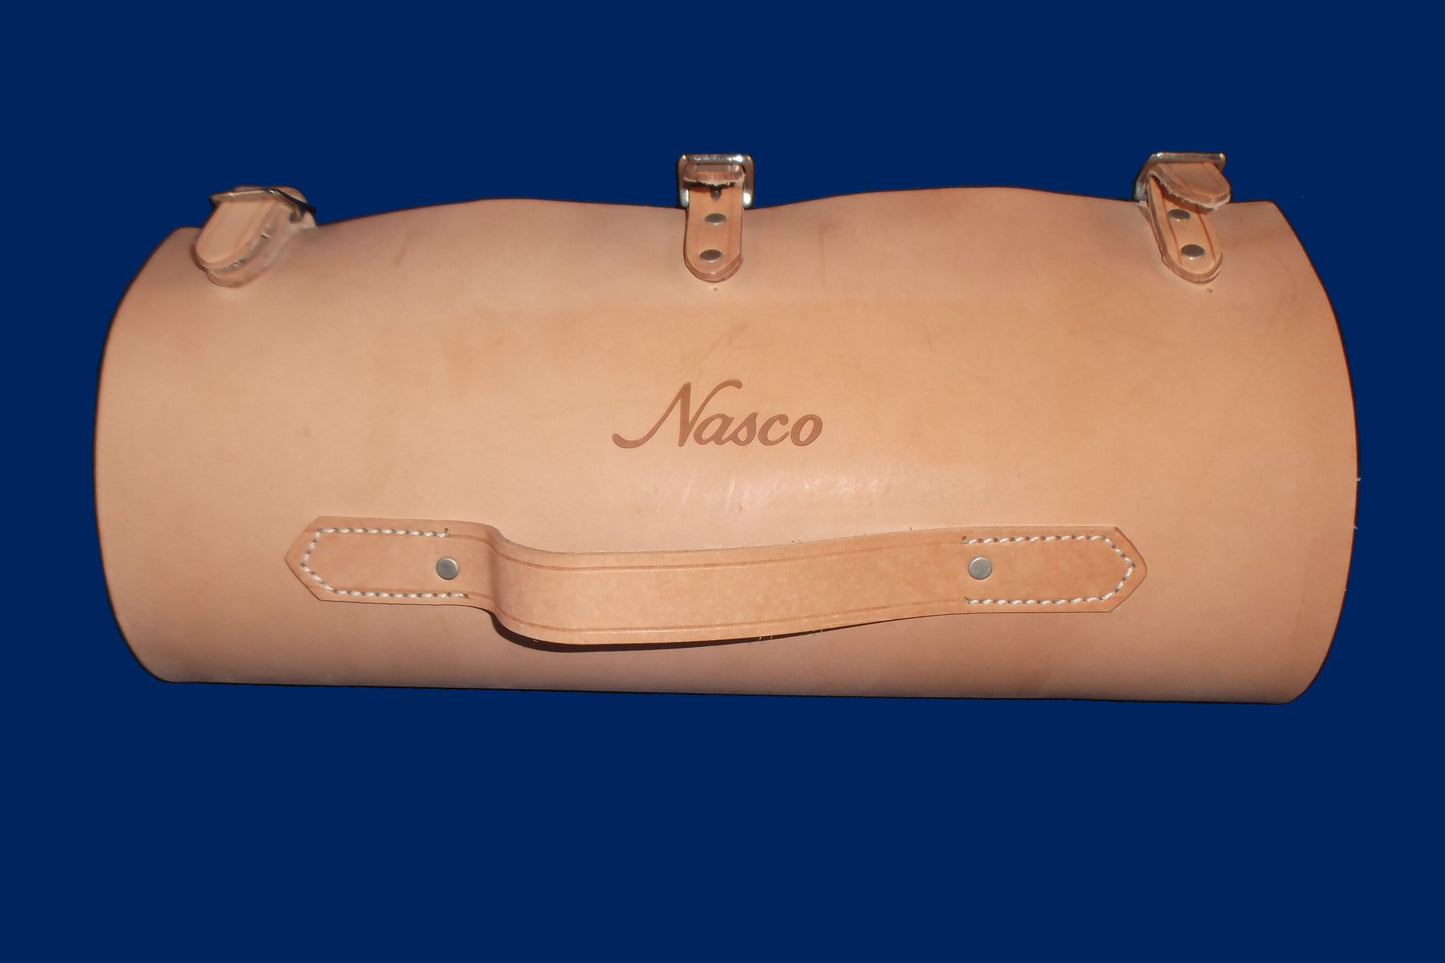 A/V Nasco Missouri leather case